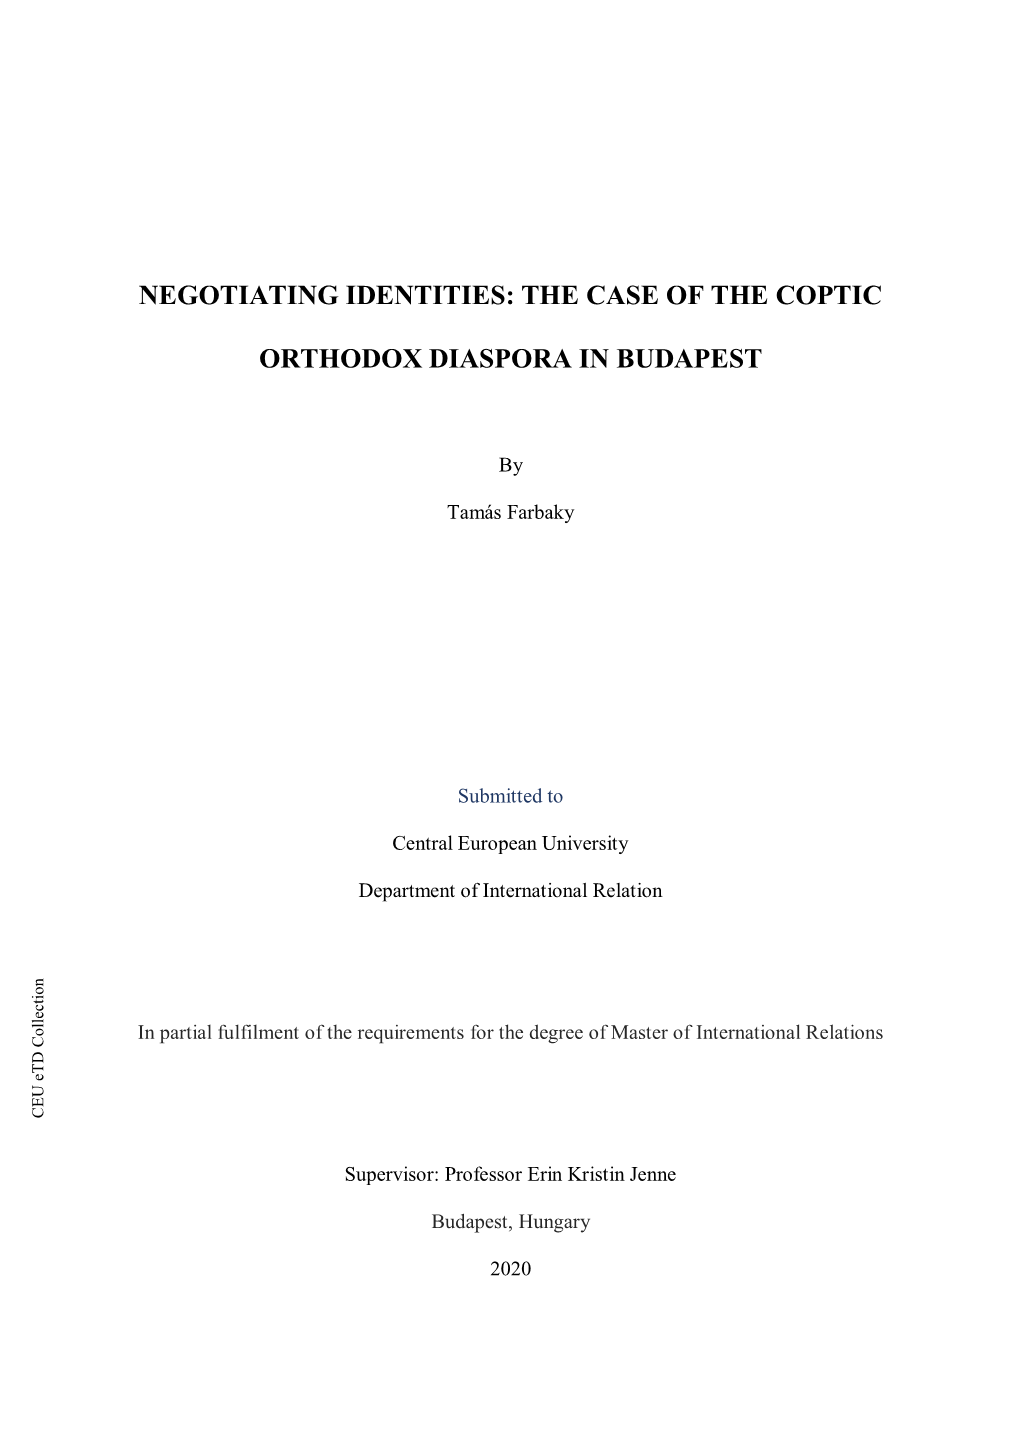 Negotiating Identities: the Case of the Coptic Orthodox Diaspora in Budapest